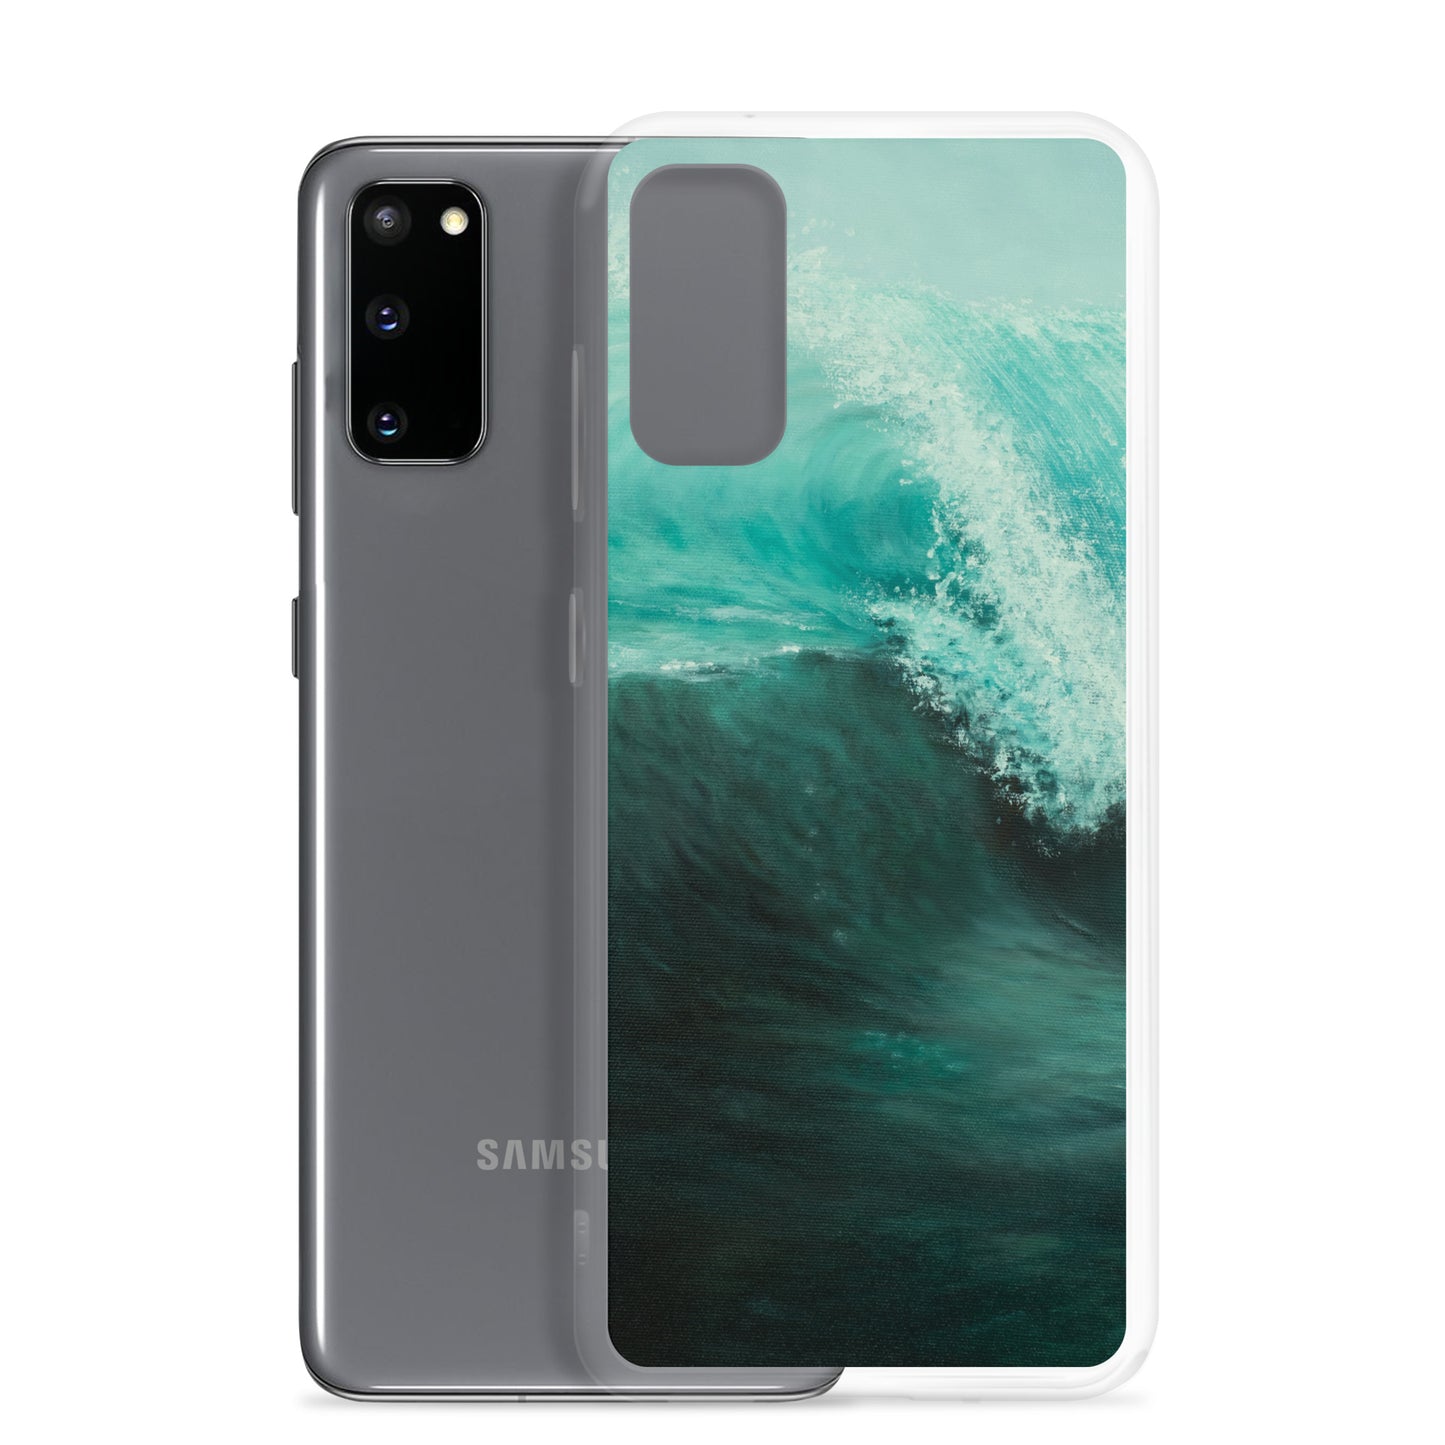 Emerald Wave Samsung Case